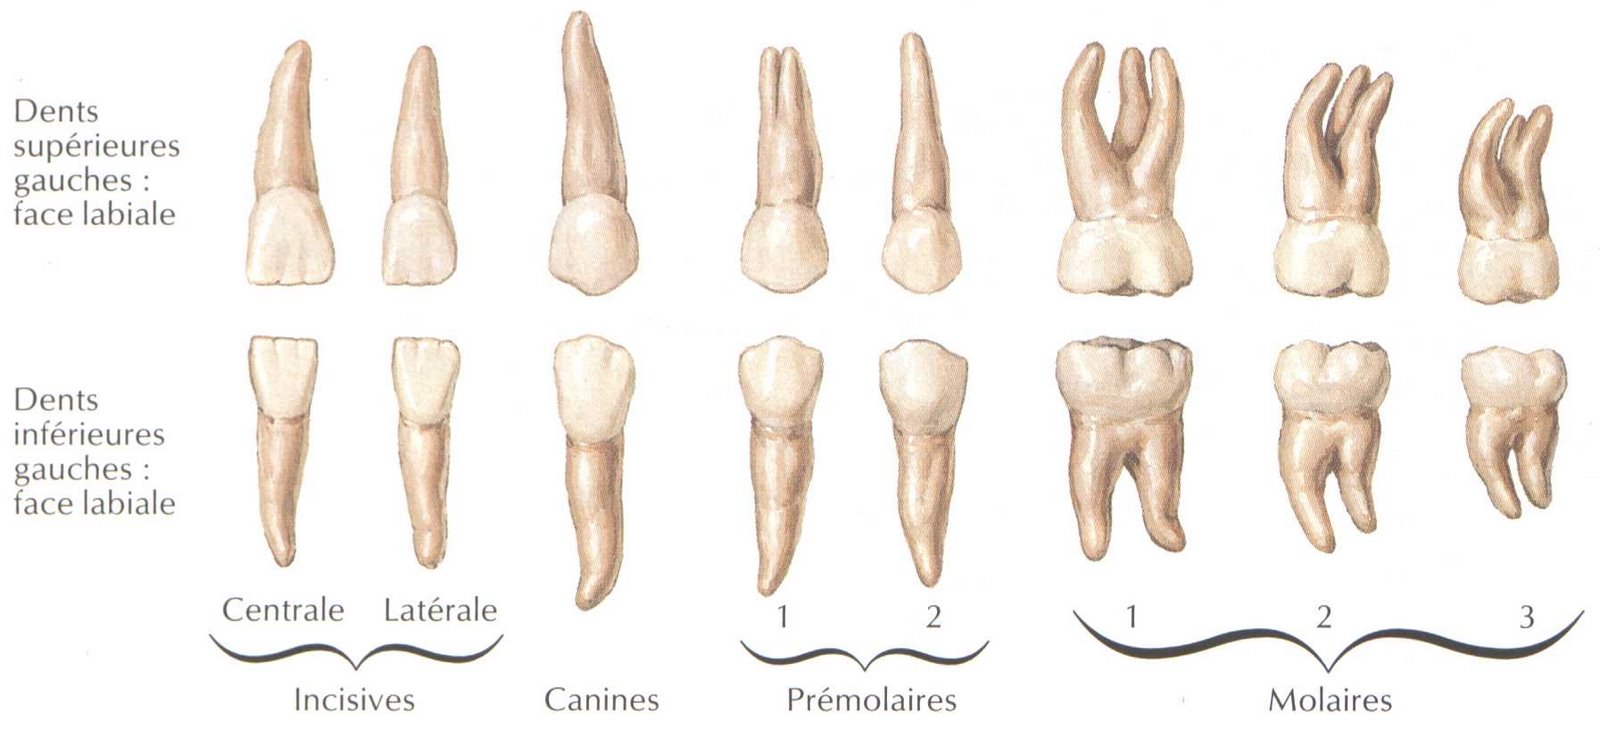 Расположение корней зубов